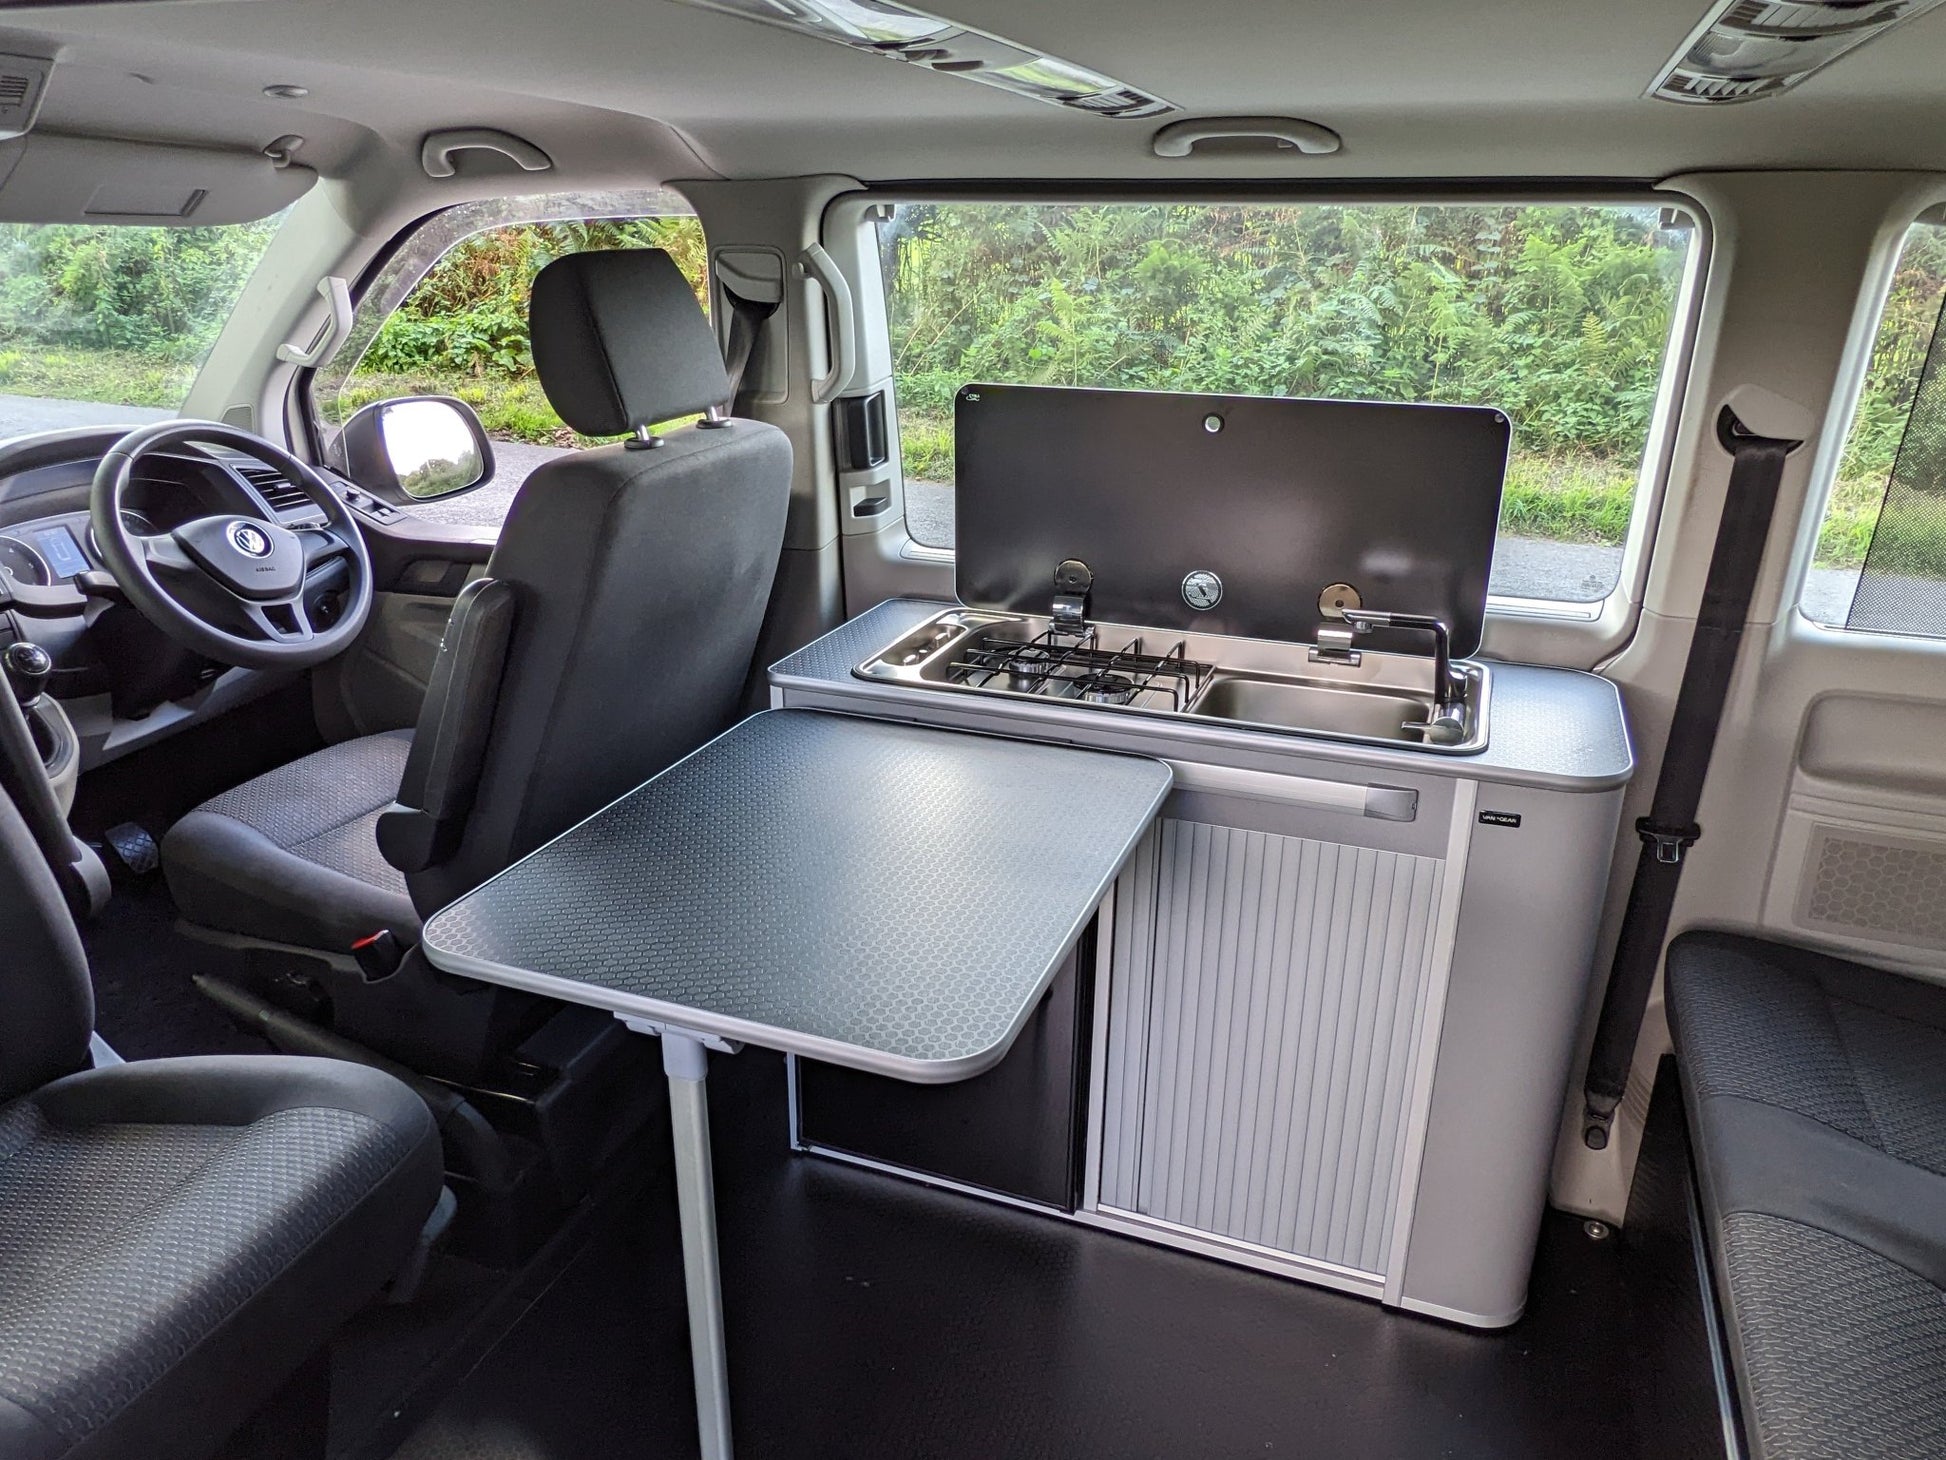 Volkswagen Transporter Camper – Vangear UK